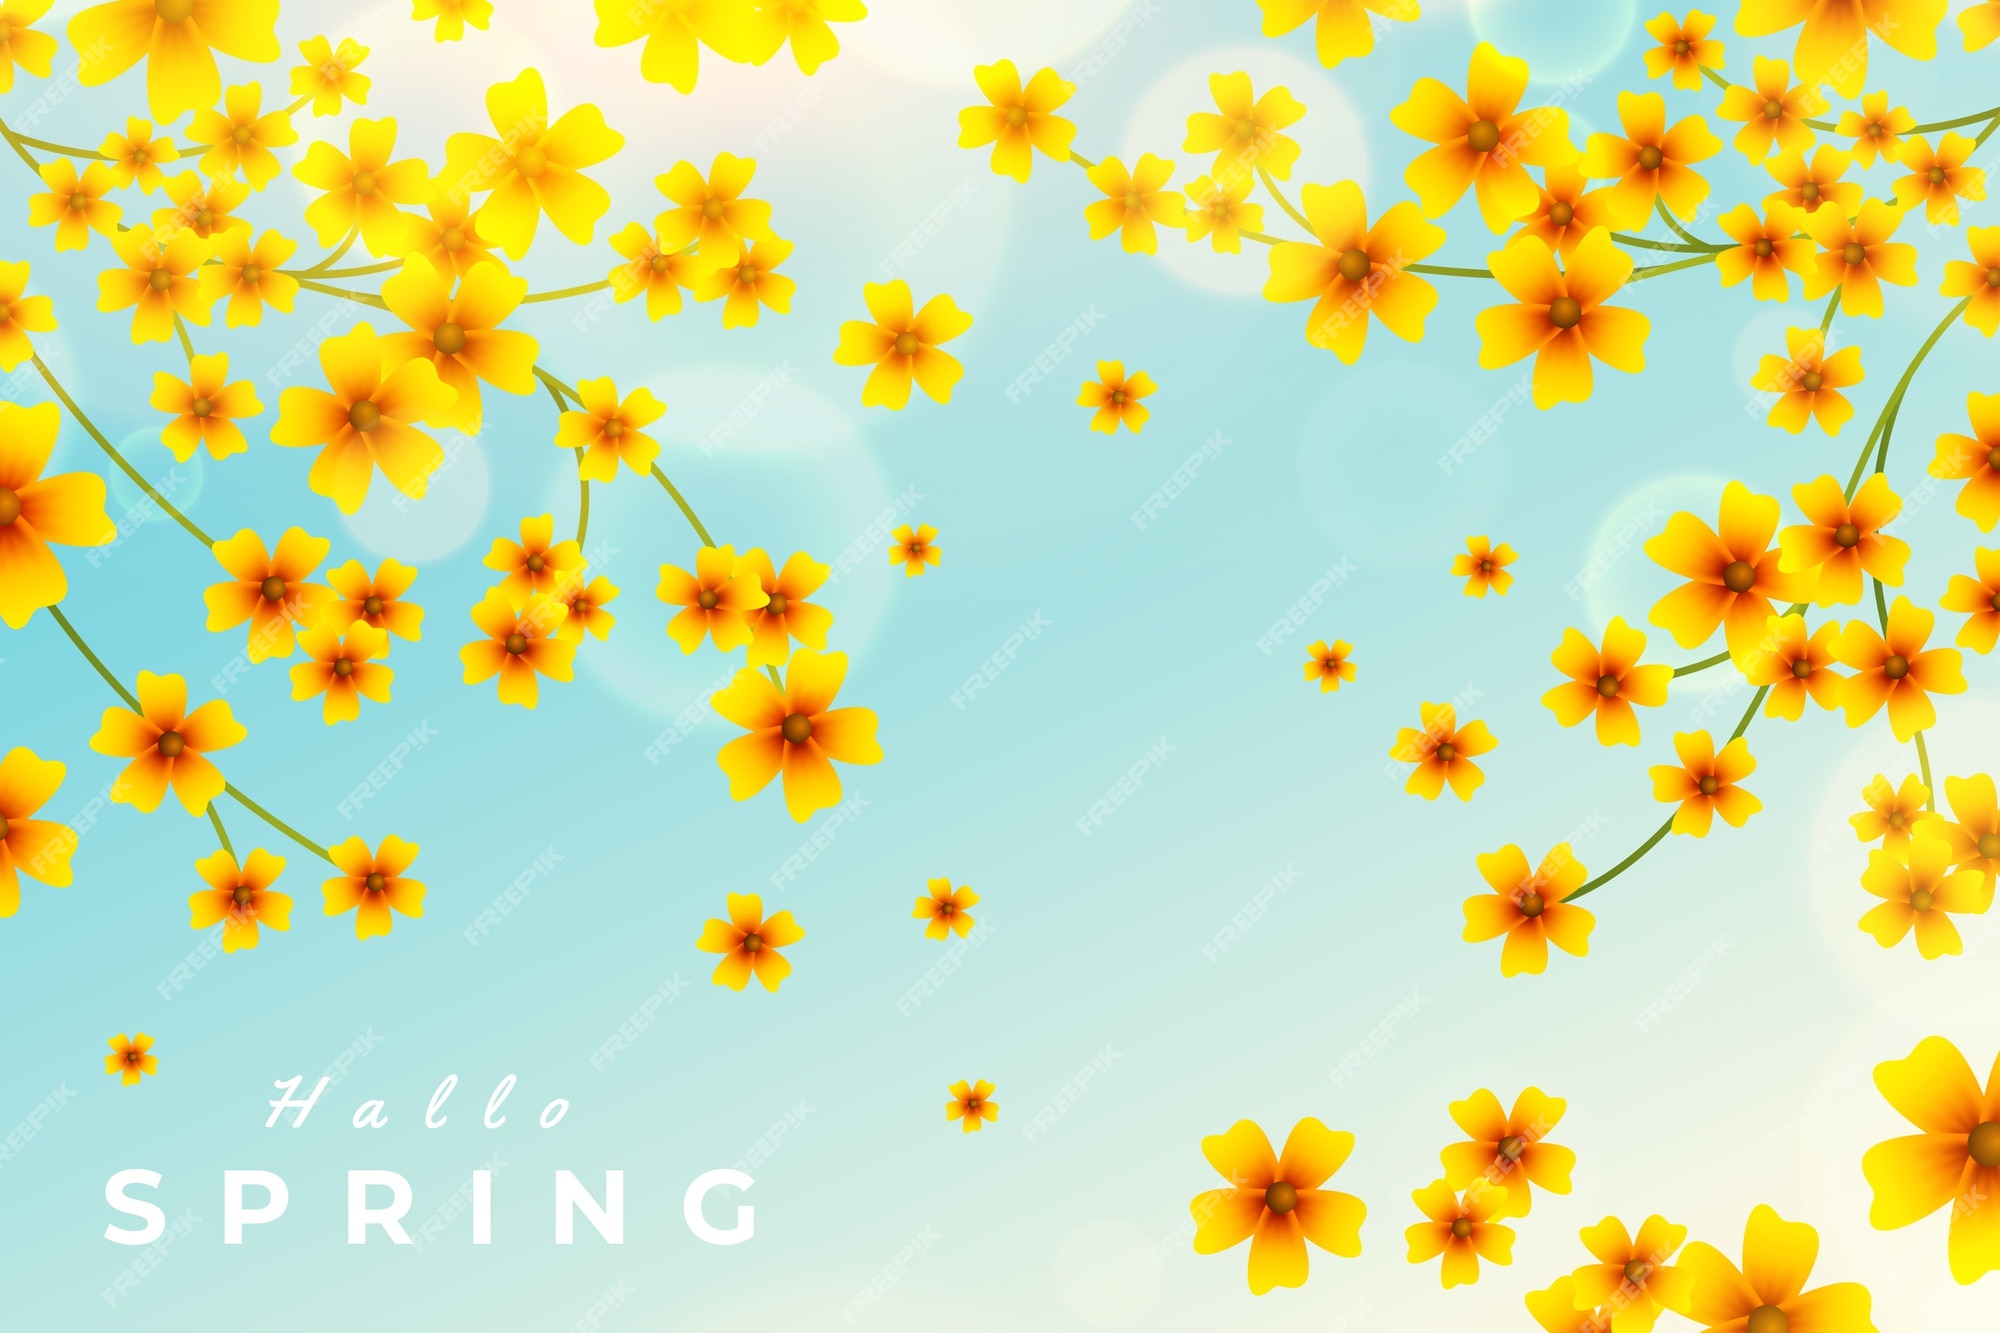 Yellow Spring Images - Free Download on Freepik